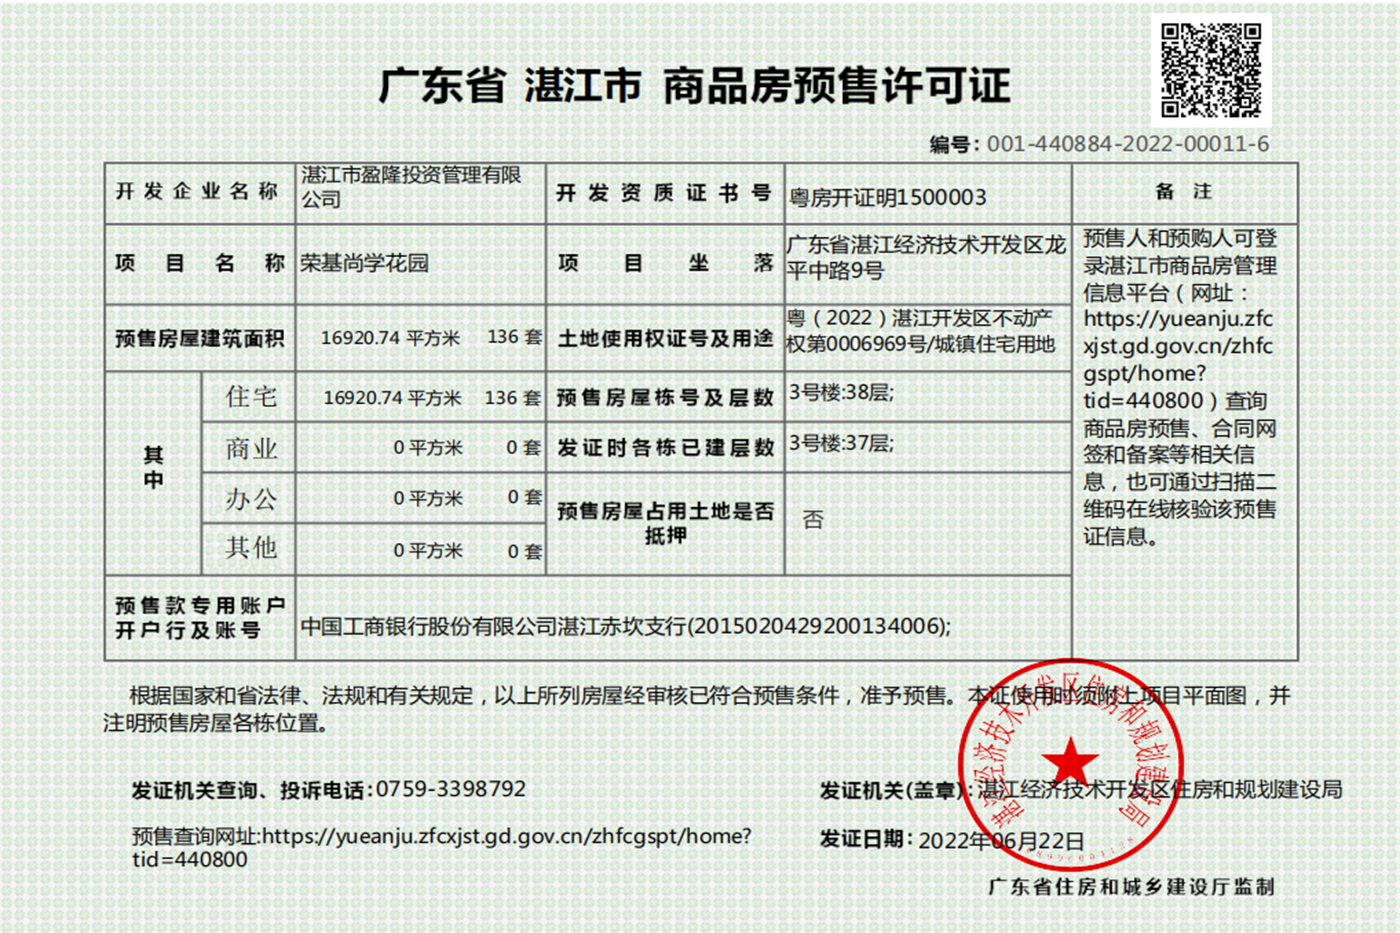 荣基尚学花园3号楼获得商品房预售许可证 共预售136套住宅